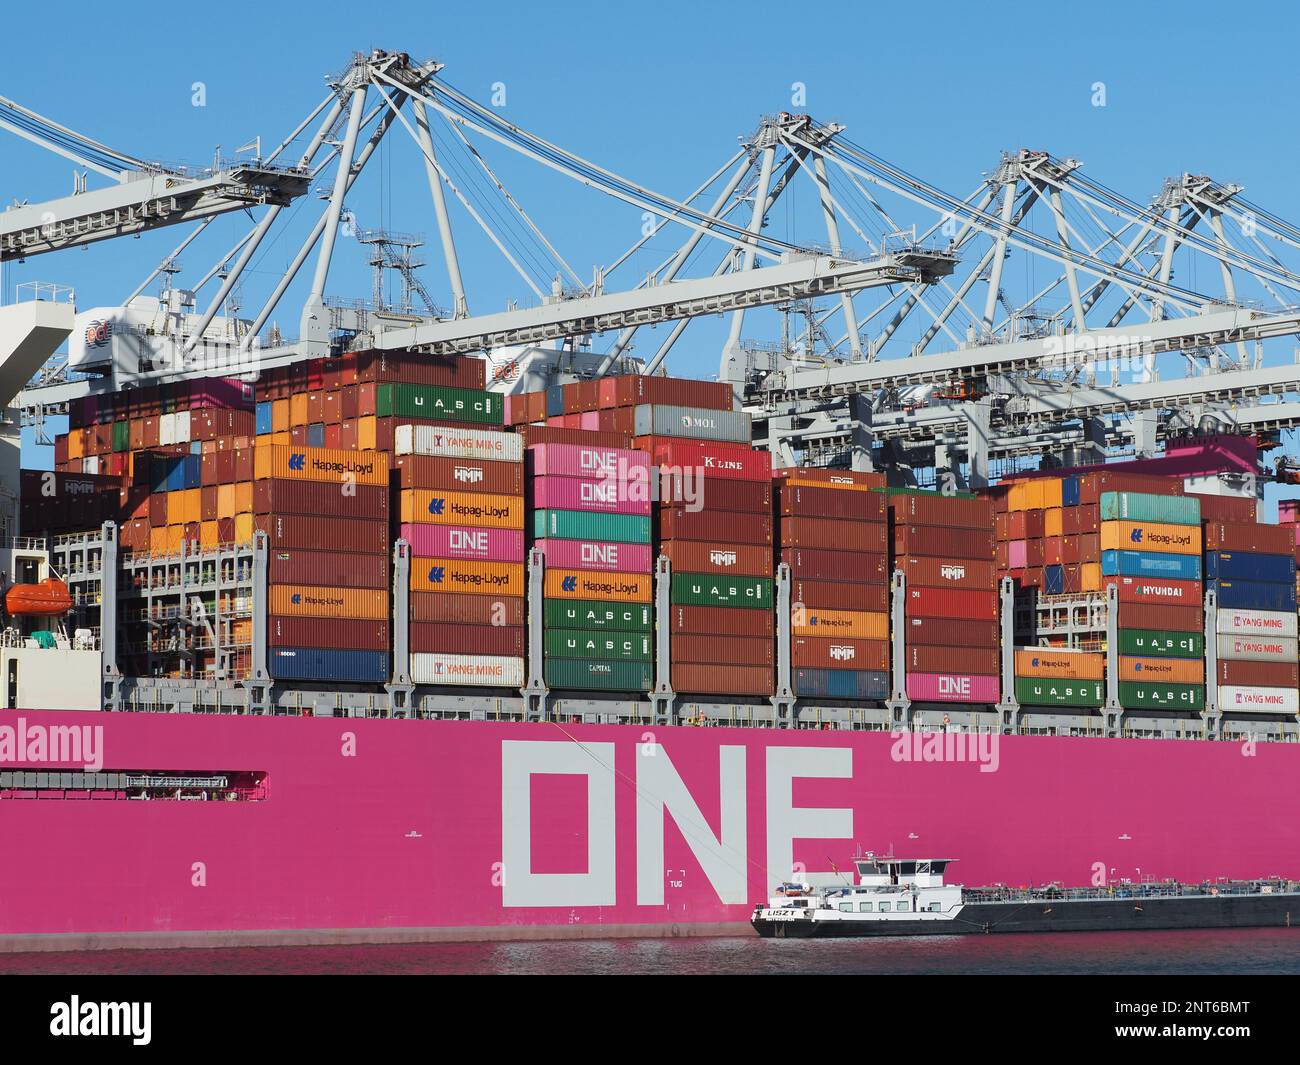 Großes rosa Containerschiff vom japanischen ONE Ocean Network Express mit einem kleinen Tankschiff daneben im Hafen von Rotterdam, Niederlande Stockfoto